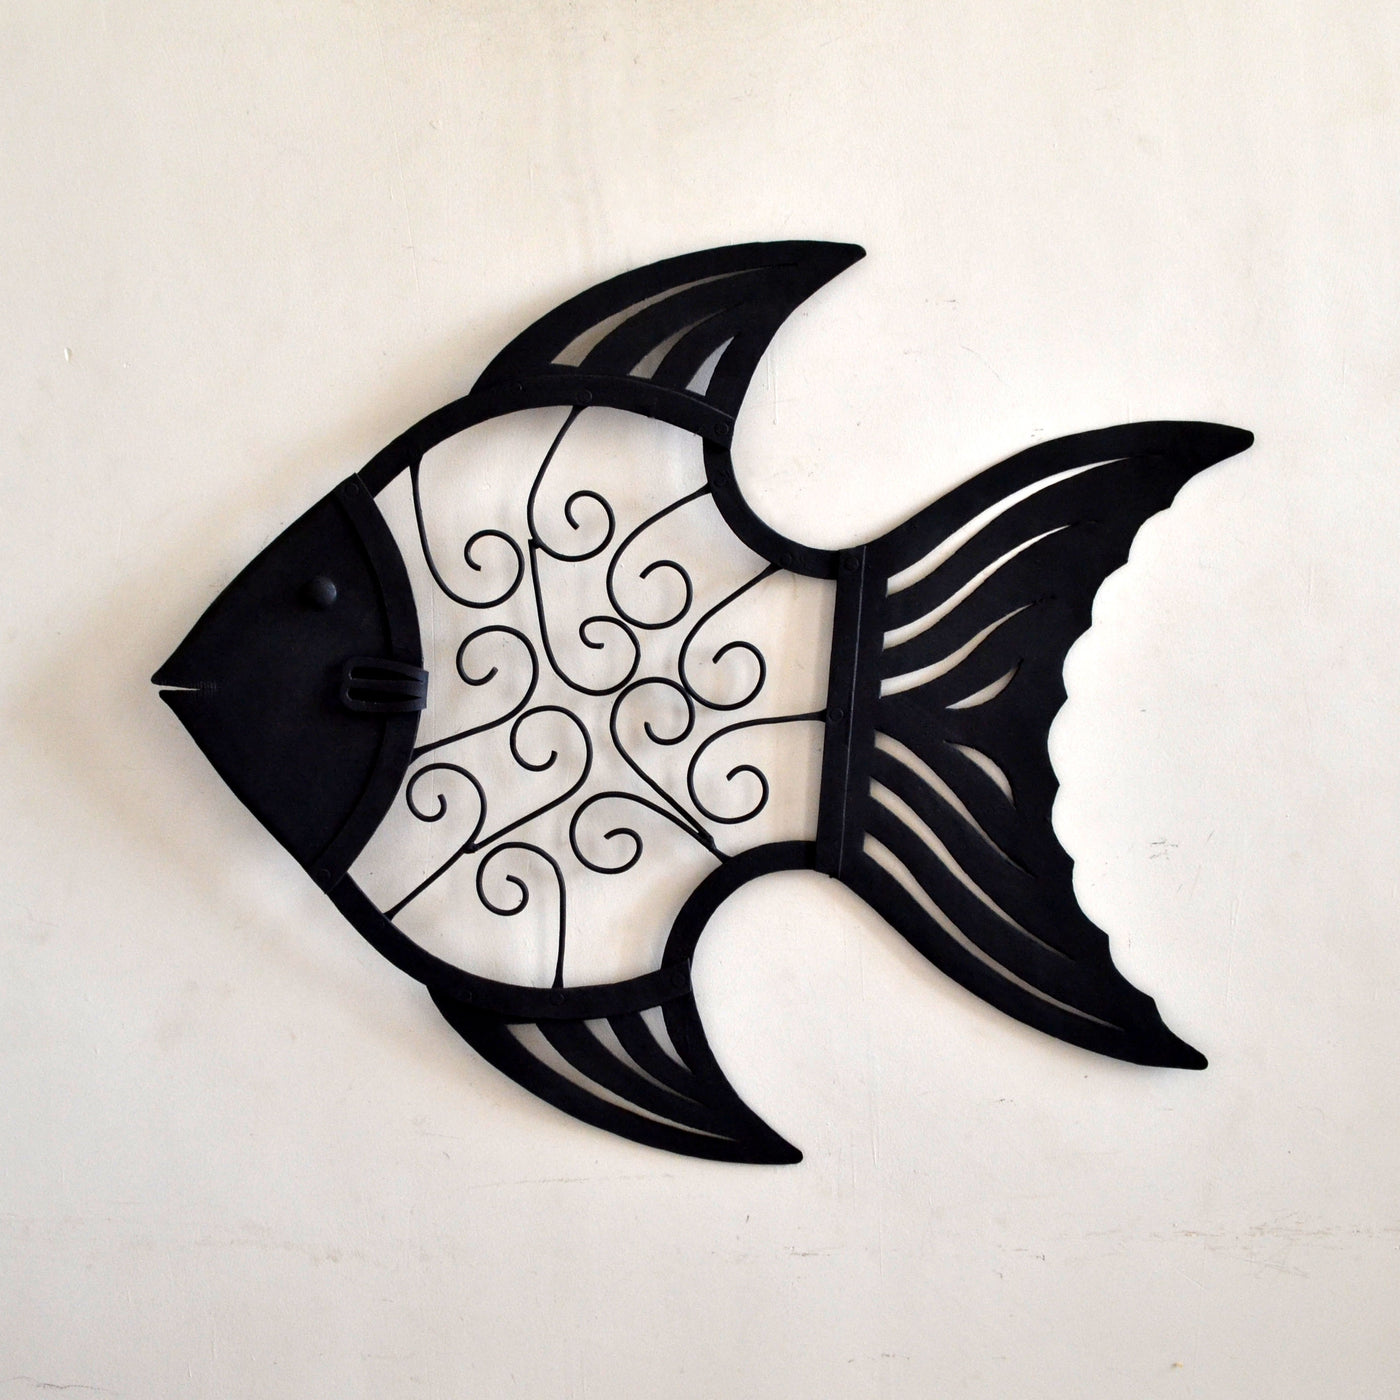 Chinhhari arts Wrought Iron abstract fish - Chinhhari Arts store